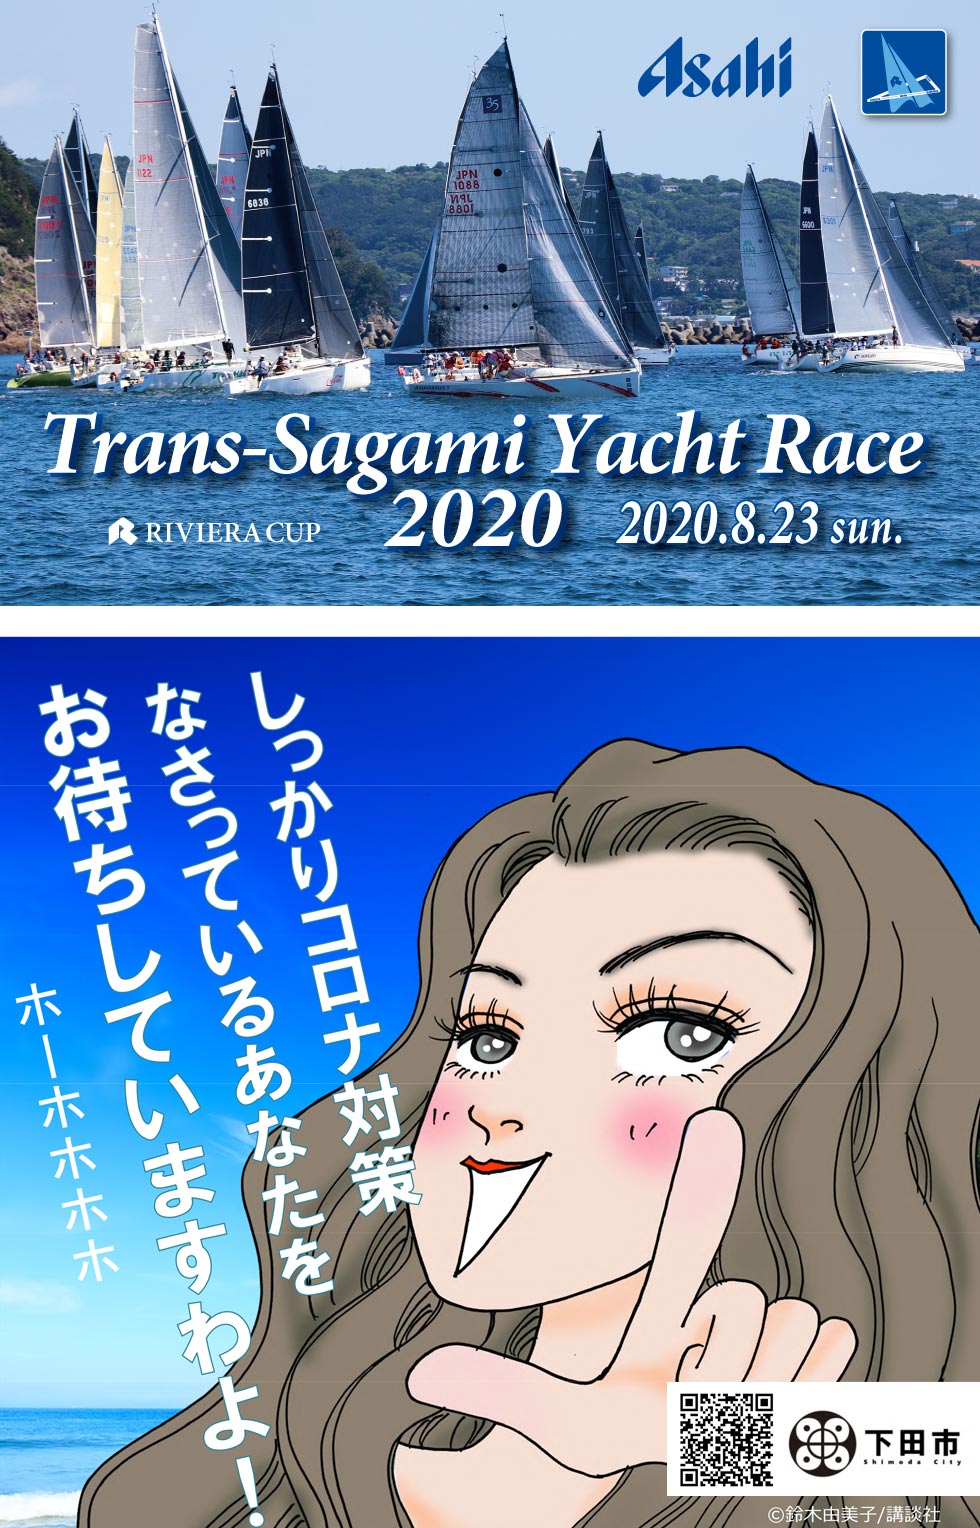 Trans-Sagami Yacht Race 2020